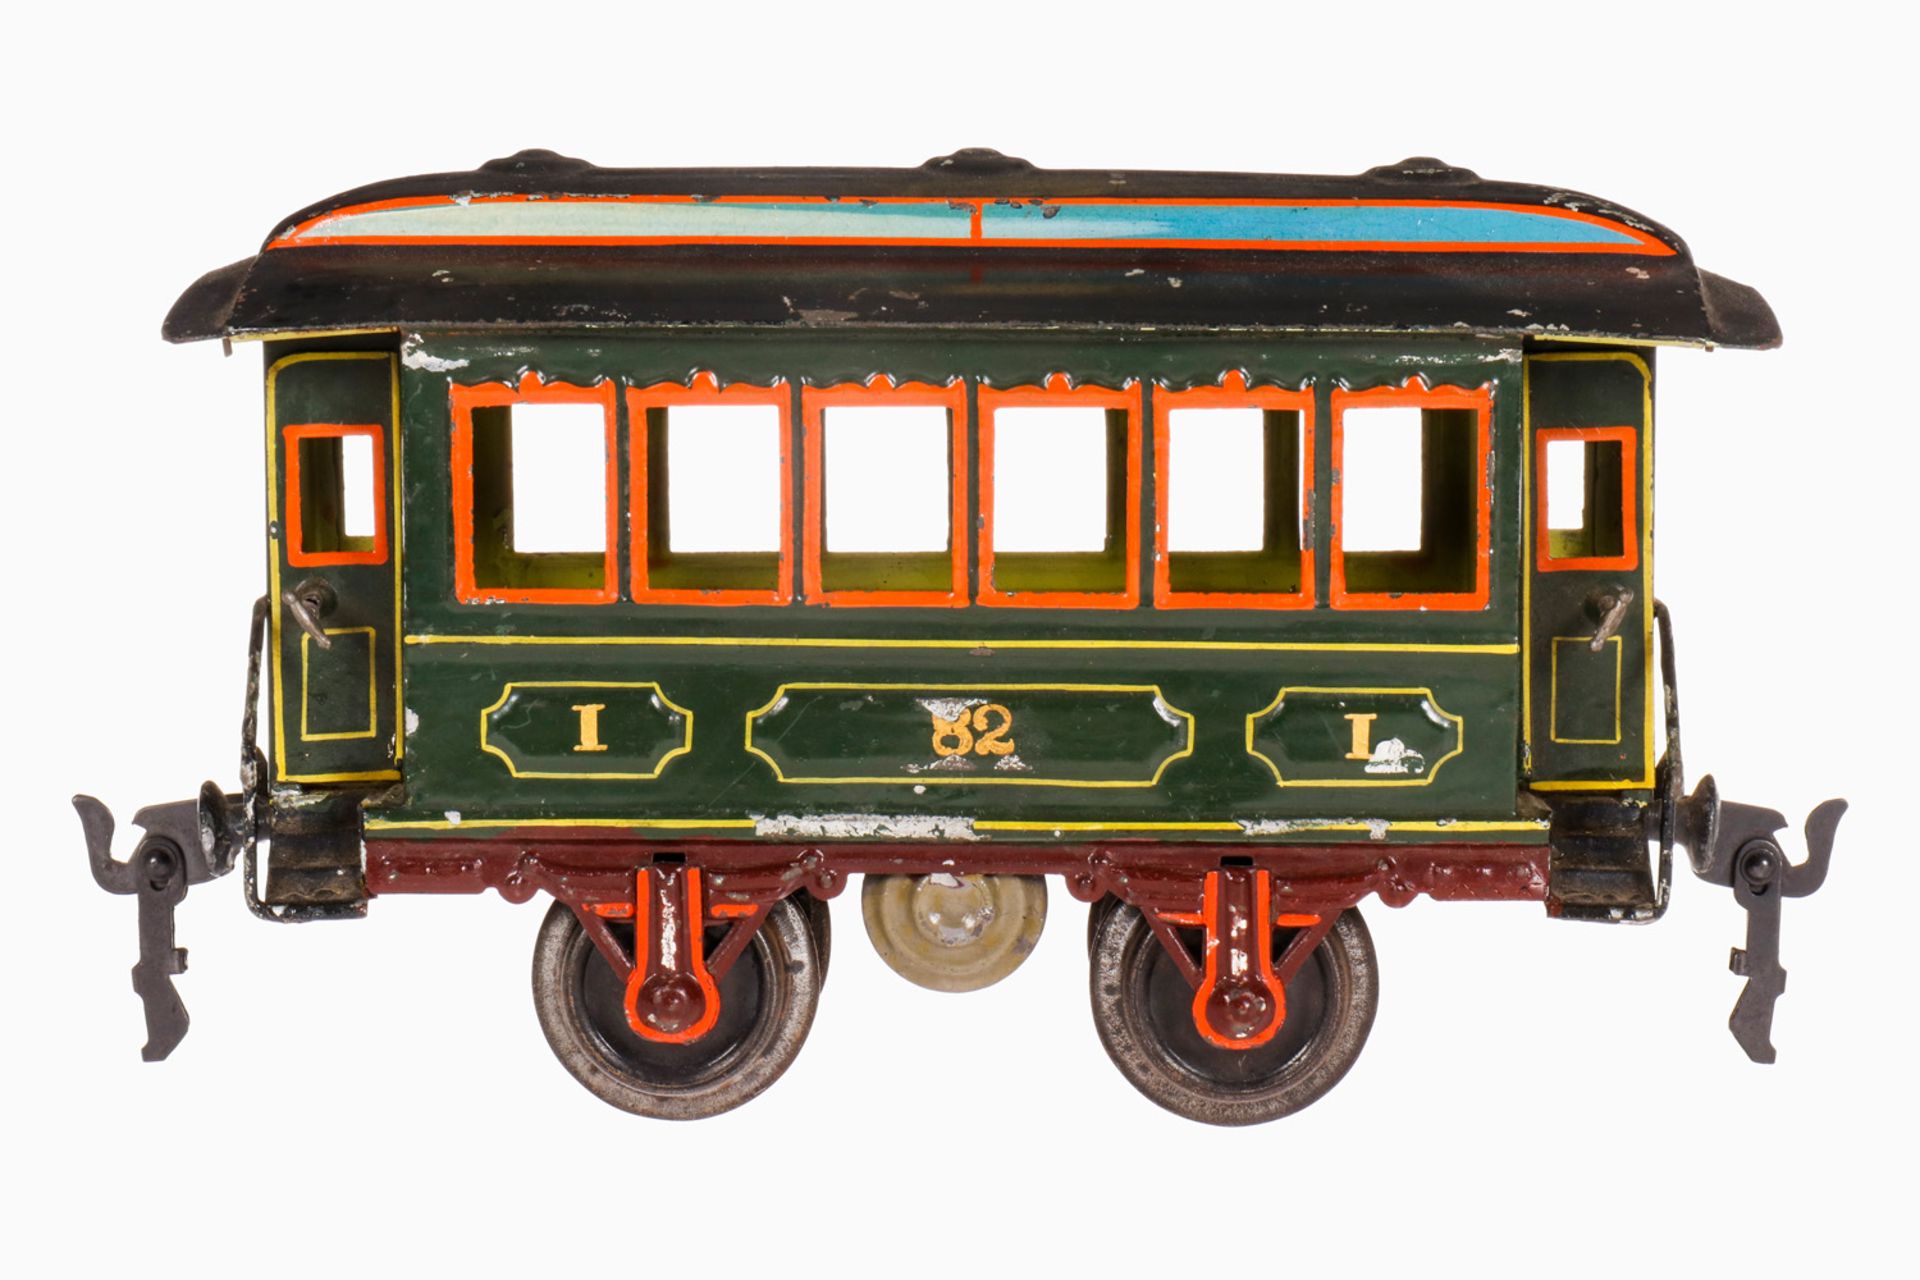 Märklin Durchgangswagen 1821, S 1, uralt, handlackiert, 4 AT, mit Inneneinrichtung und querliegendem